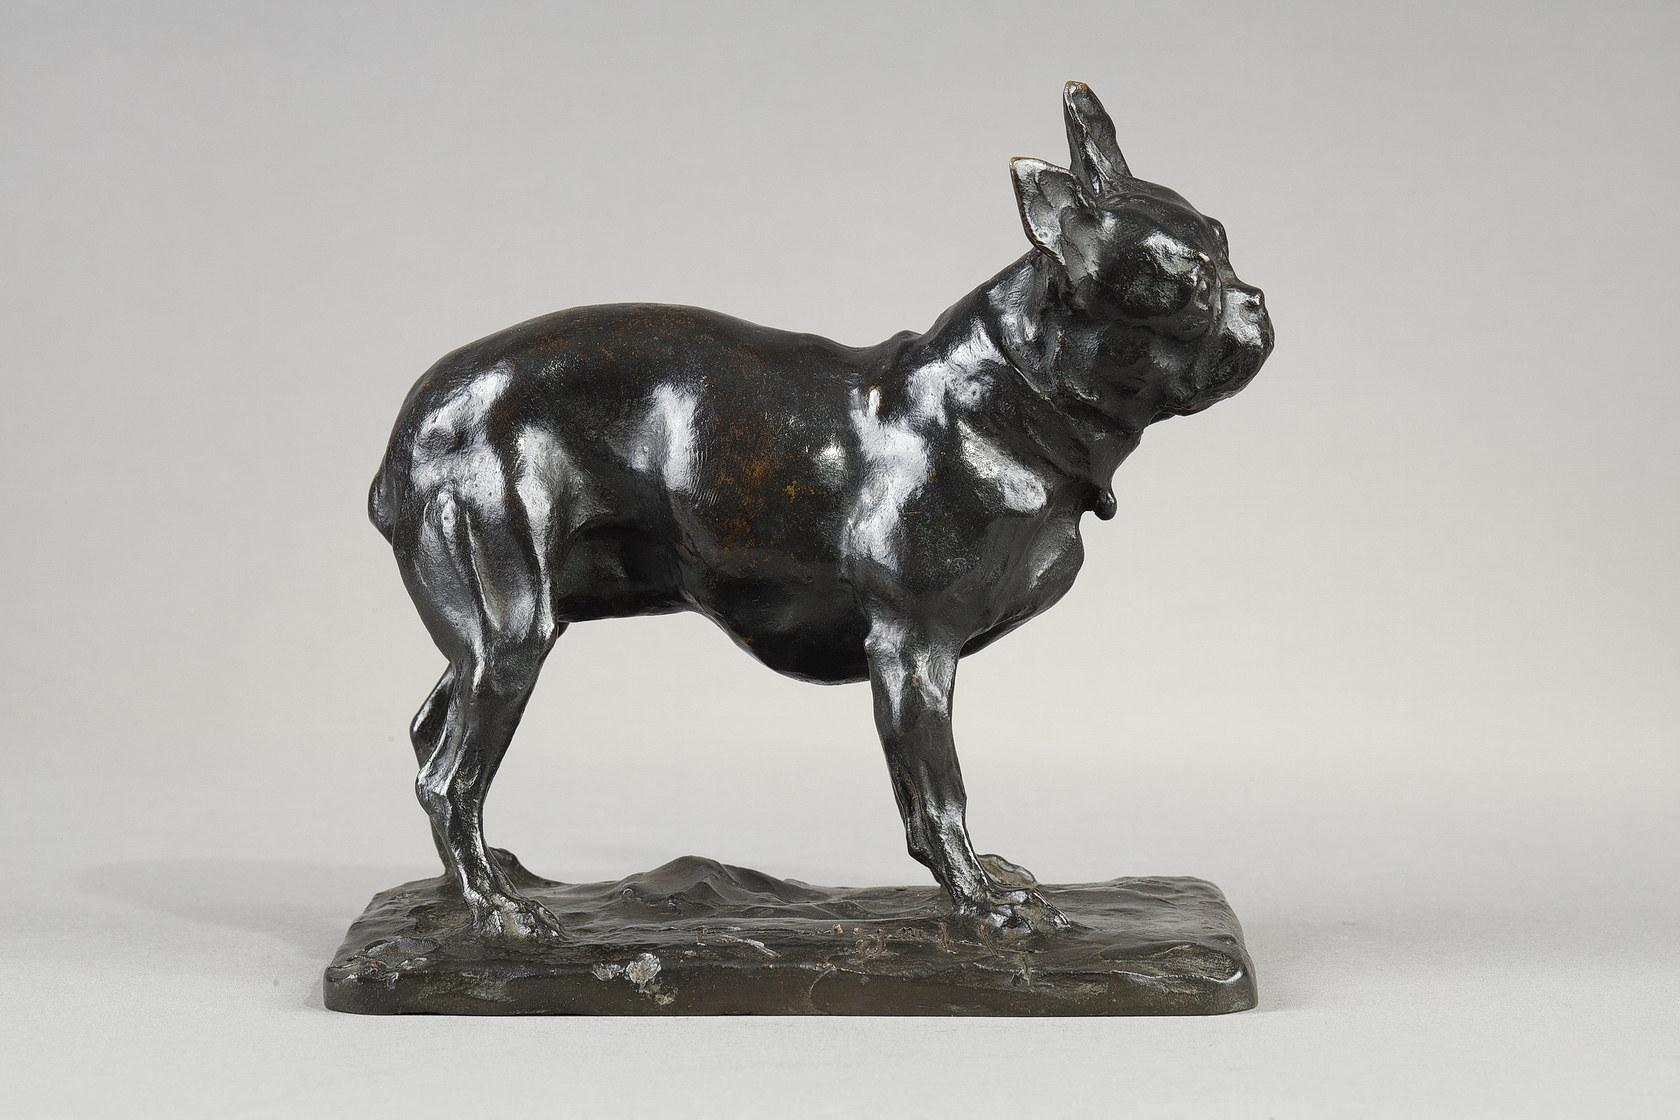 French bulldog - Sculpture by Rembrandt Bugatti